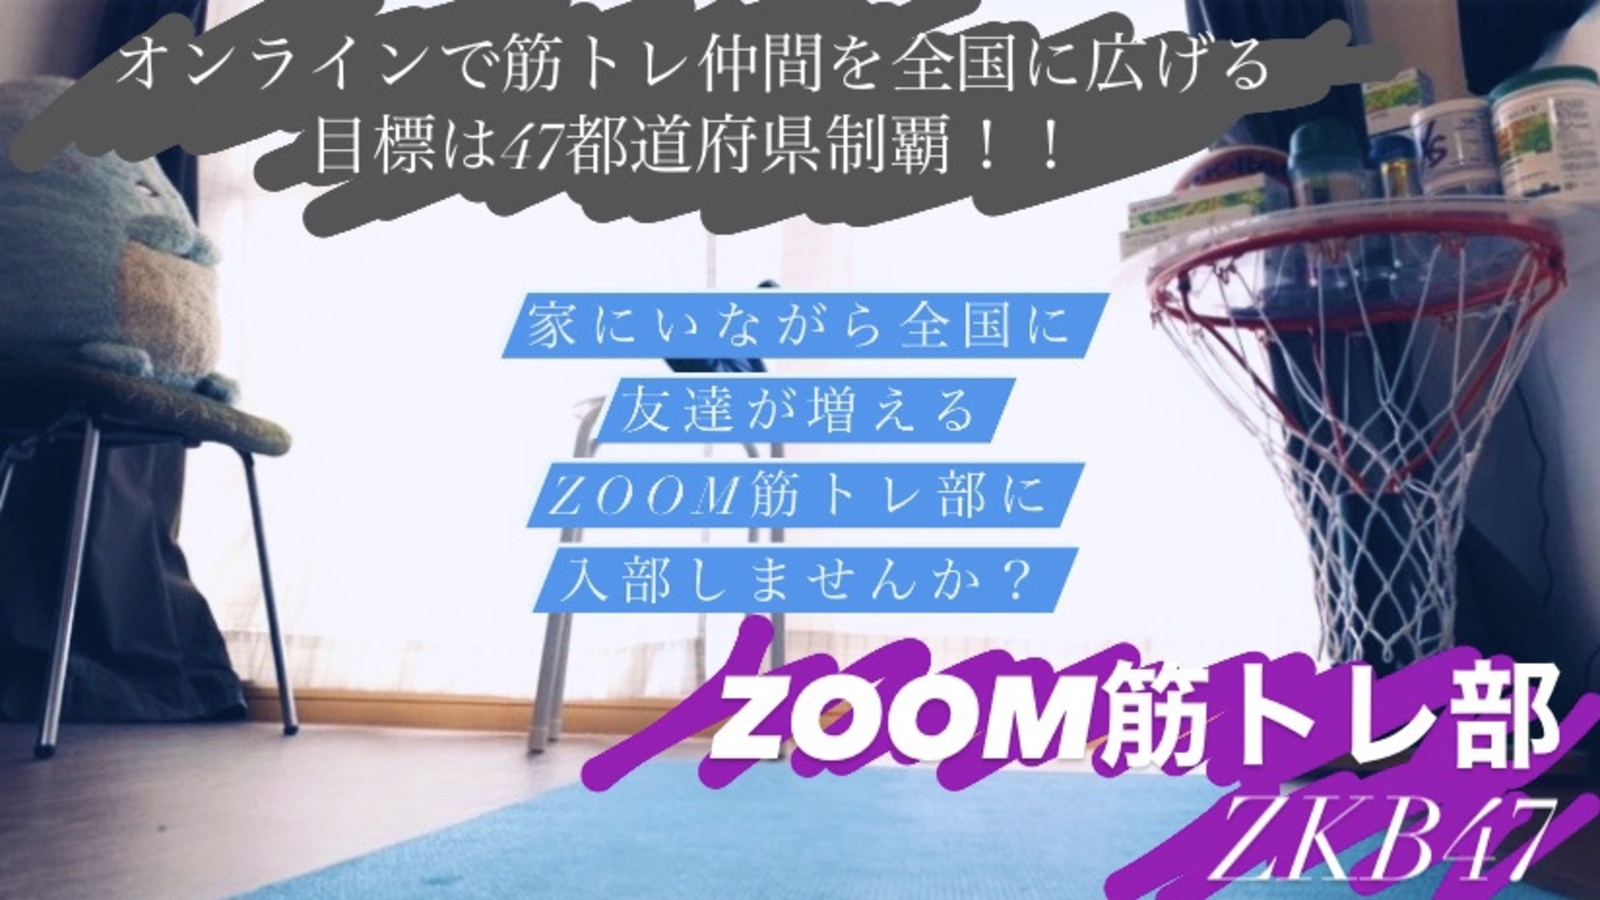 zoom筋トレ部〜ZKB47+〜